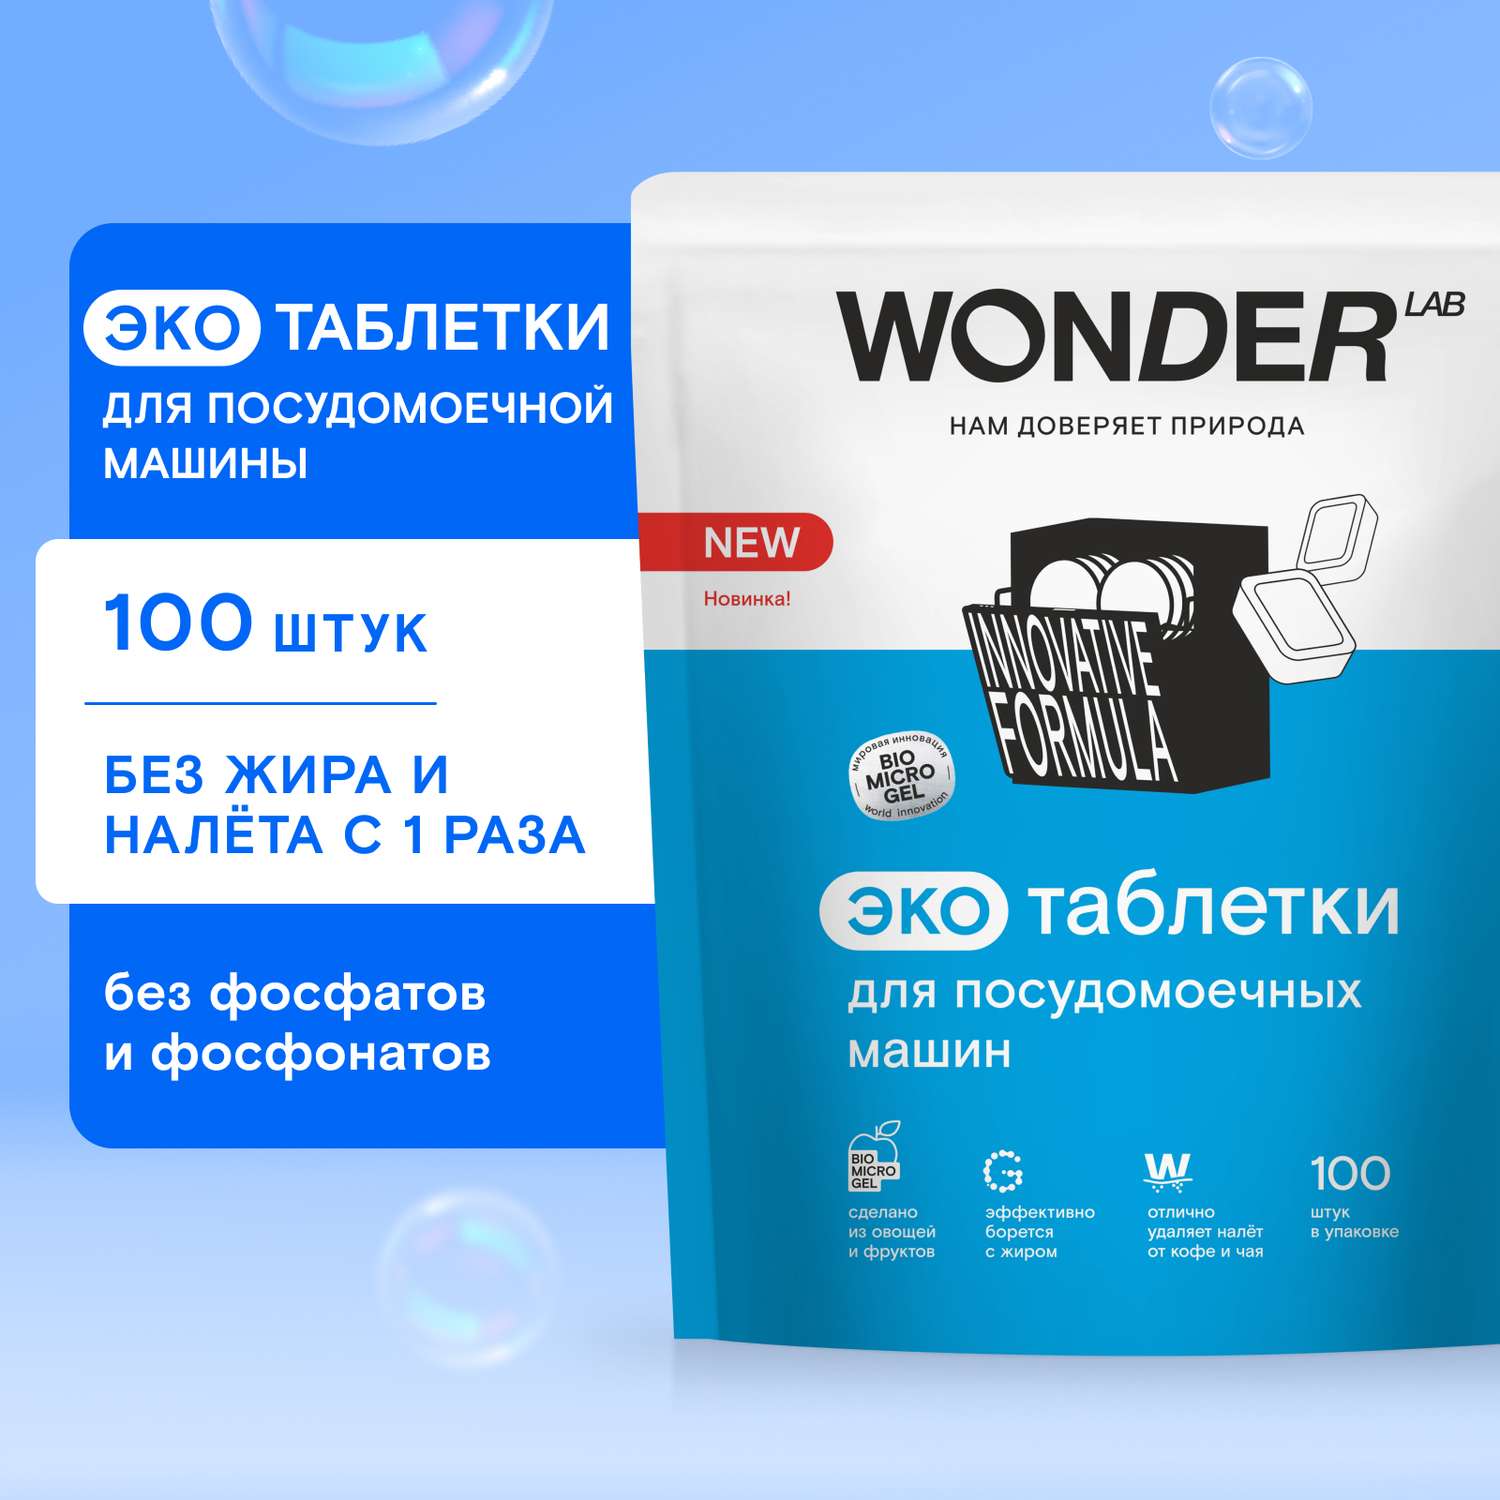 Таблетки для посудомоечных машин Wоnder Lab Эко 100шт - фото 1